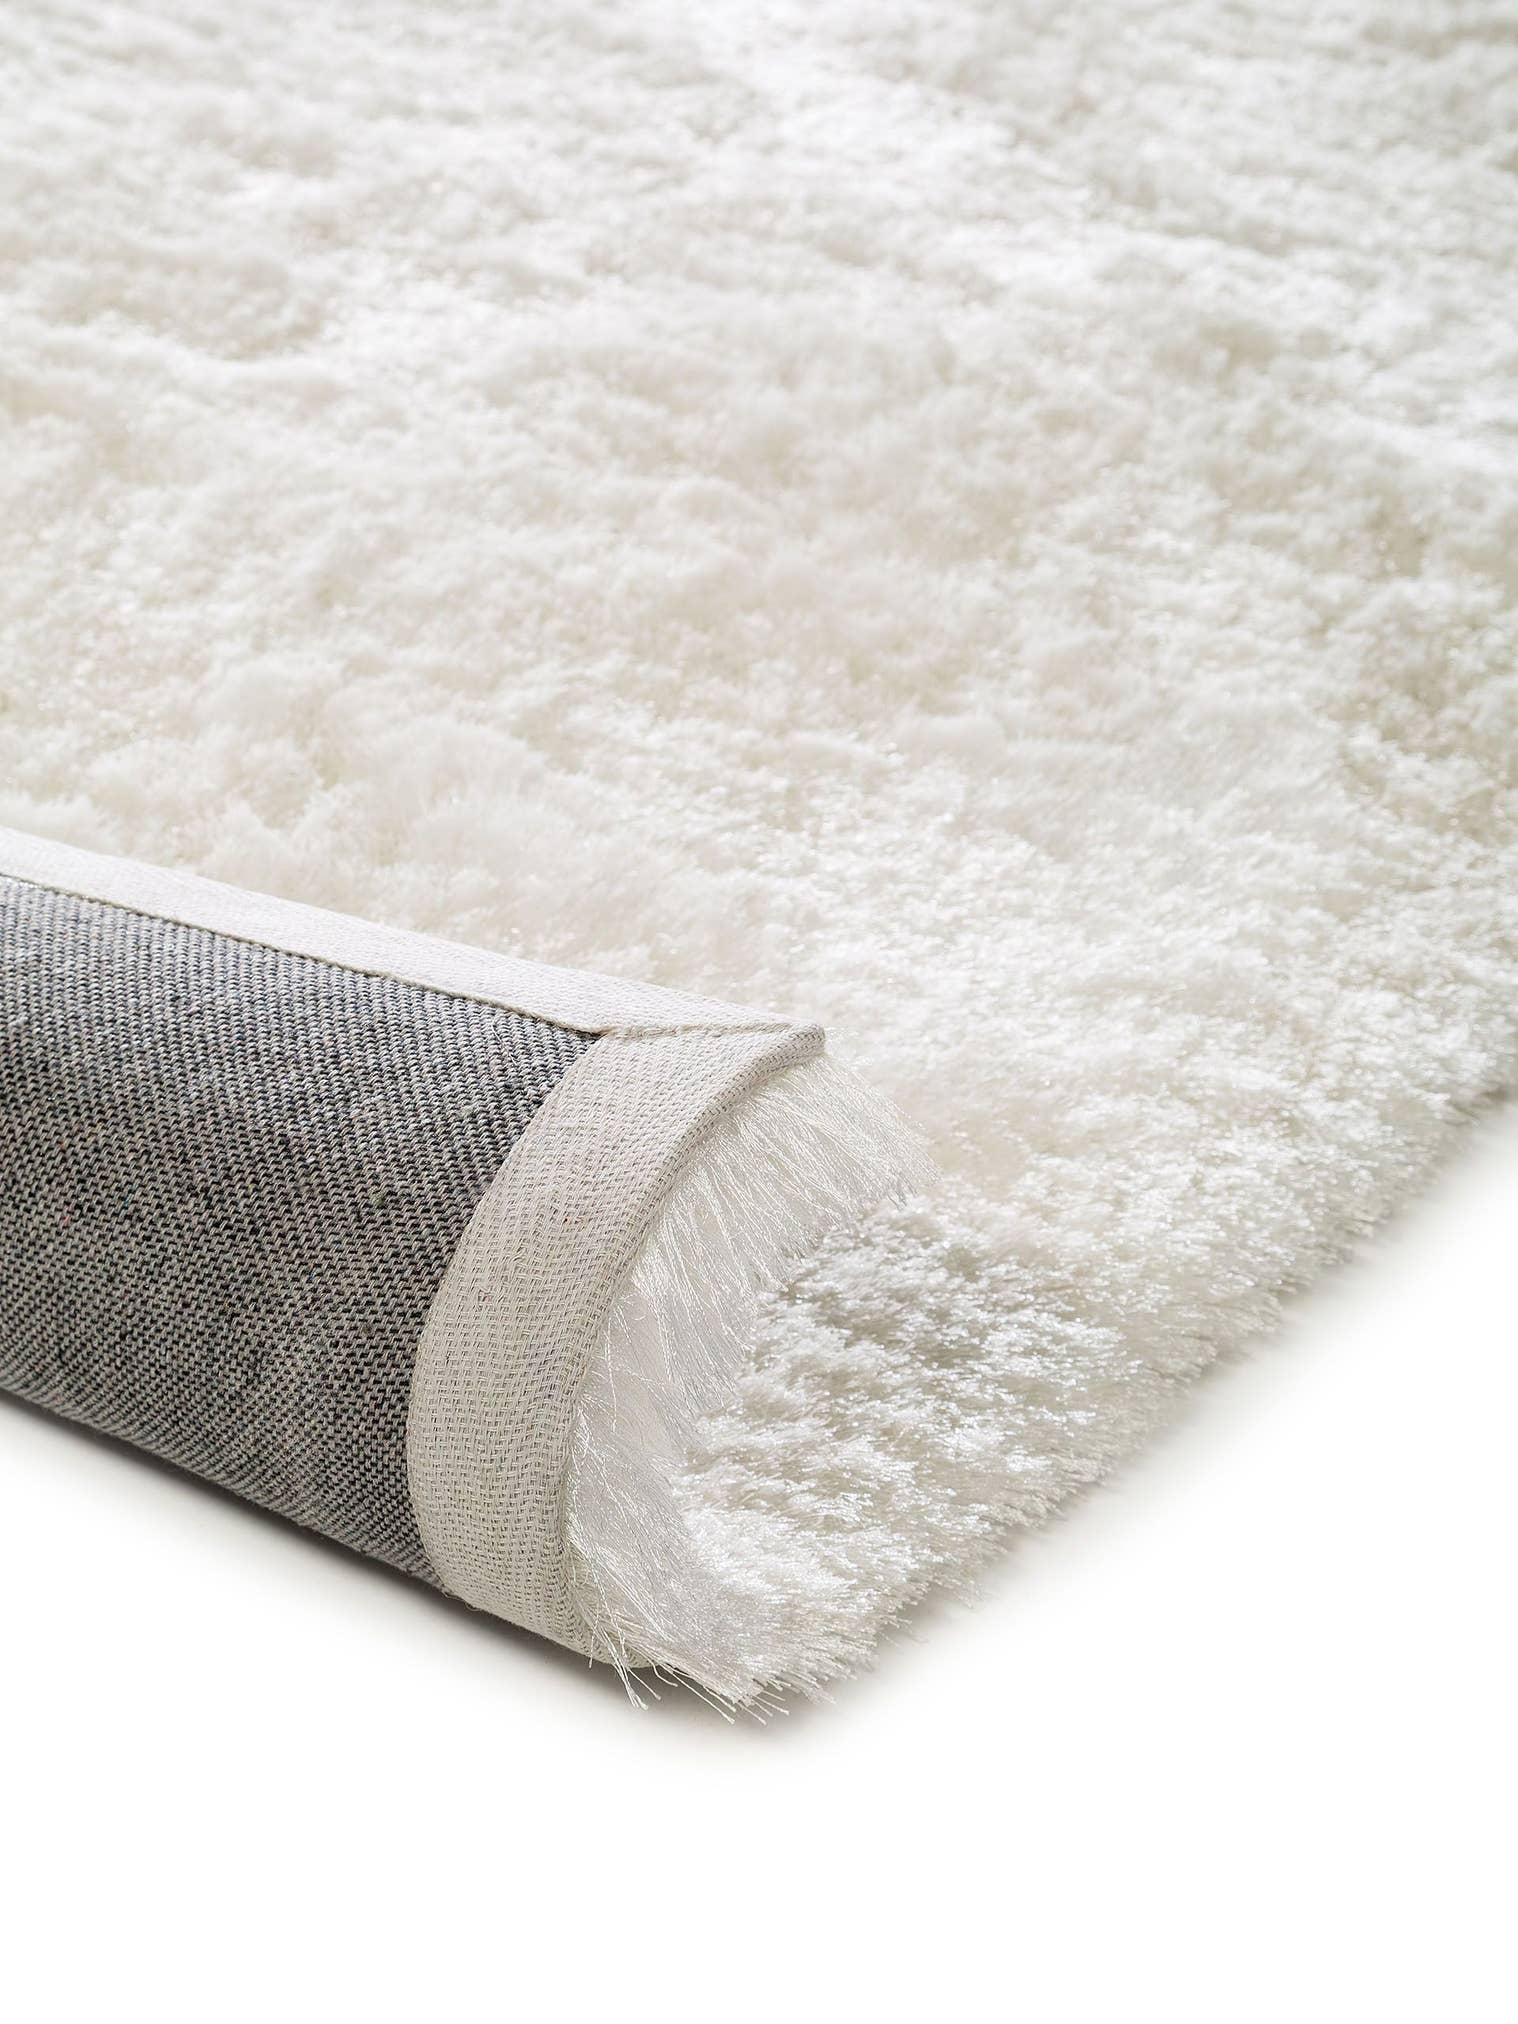 Teppich aus 100% Polyester in Weiß mit 31 bis 40 mm hohem Flor von benuta Nest